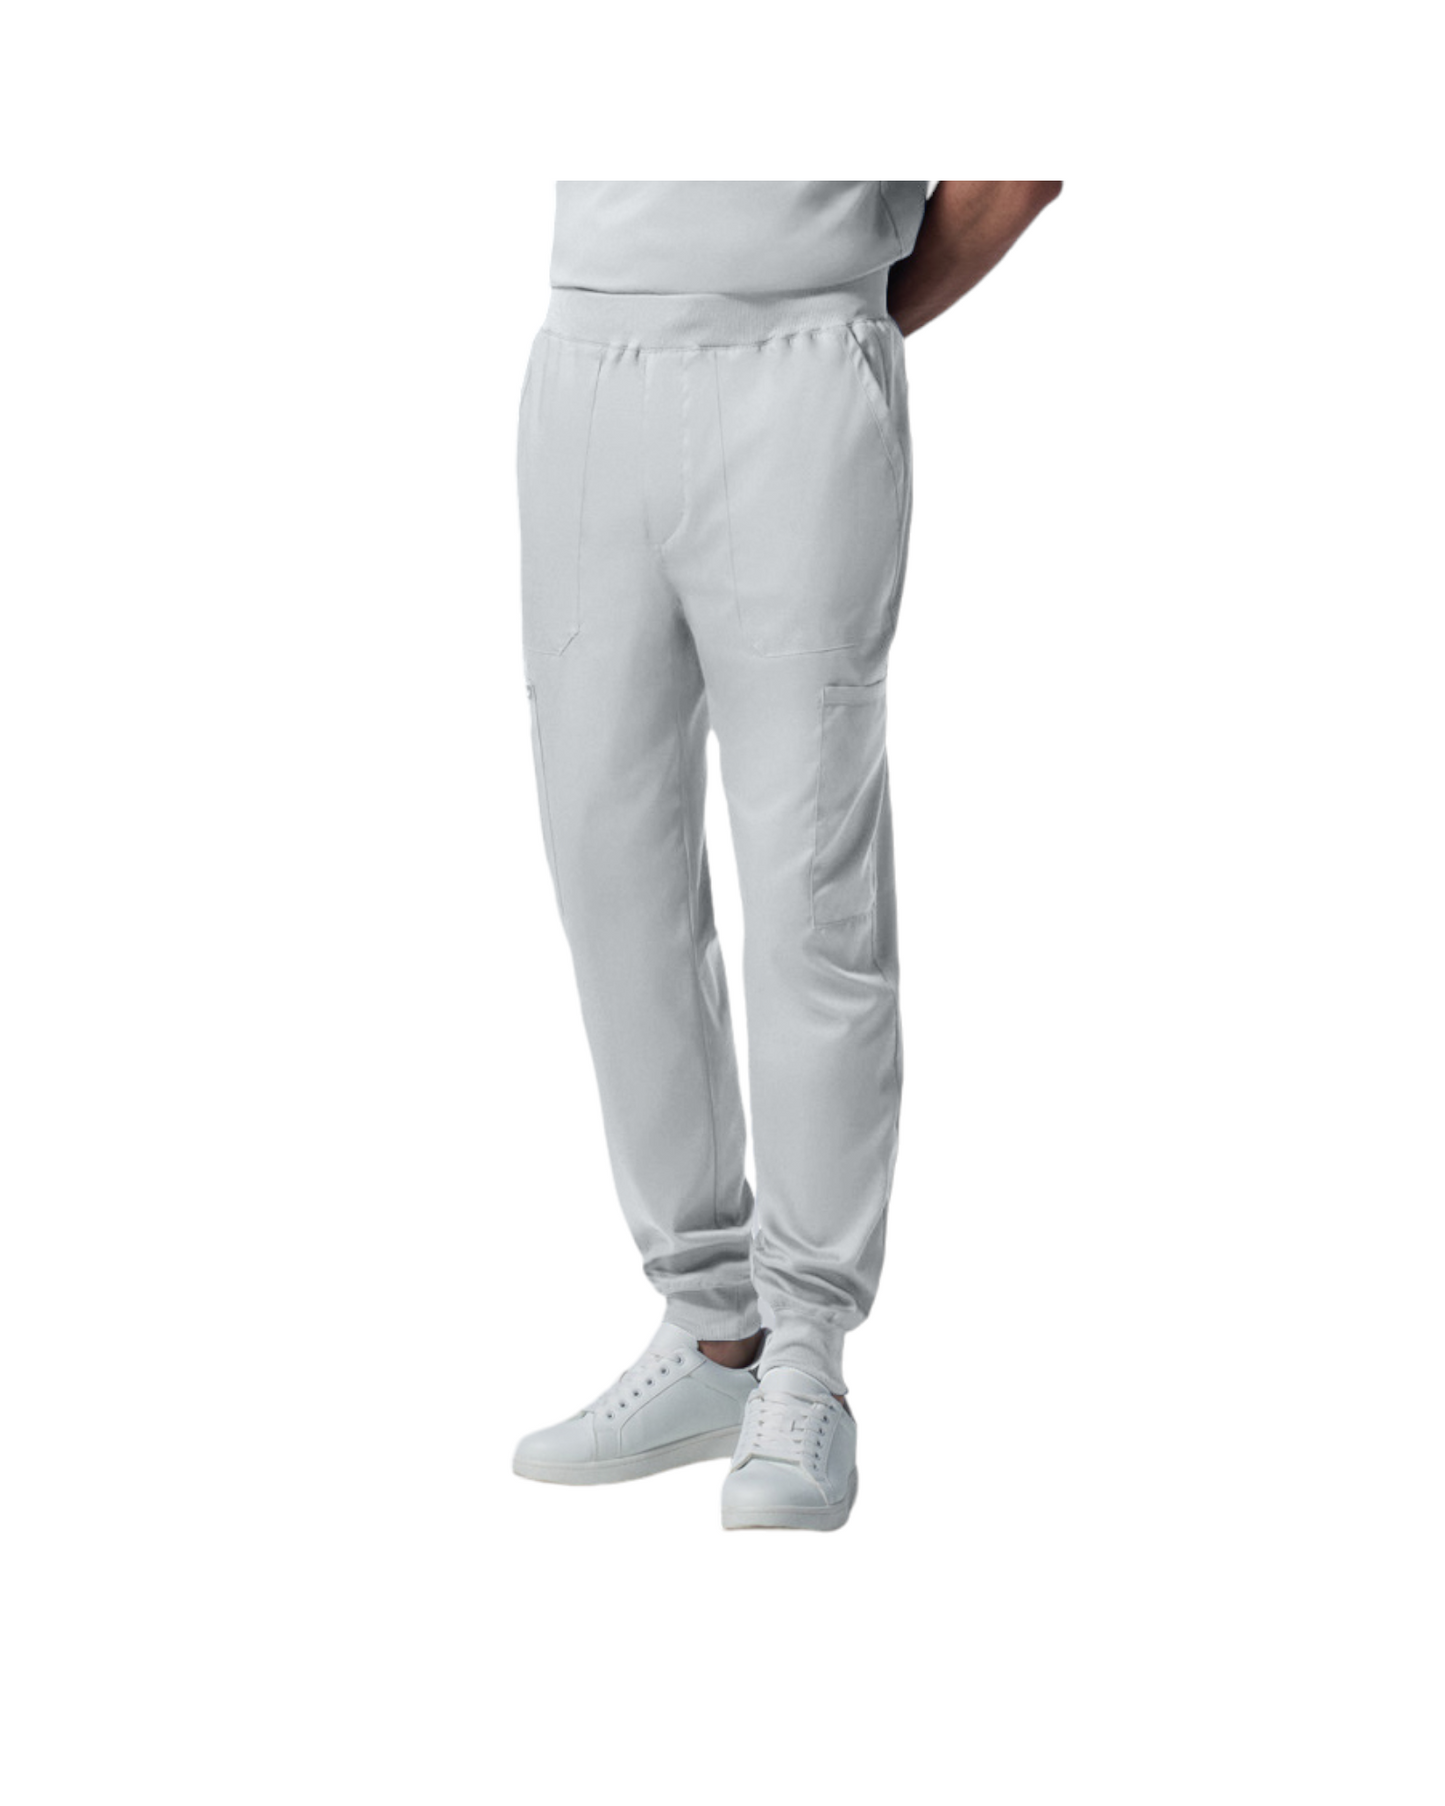 Pantalon jogger pour hommes Landau Proflex #LB407 couleur Blanc